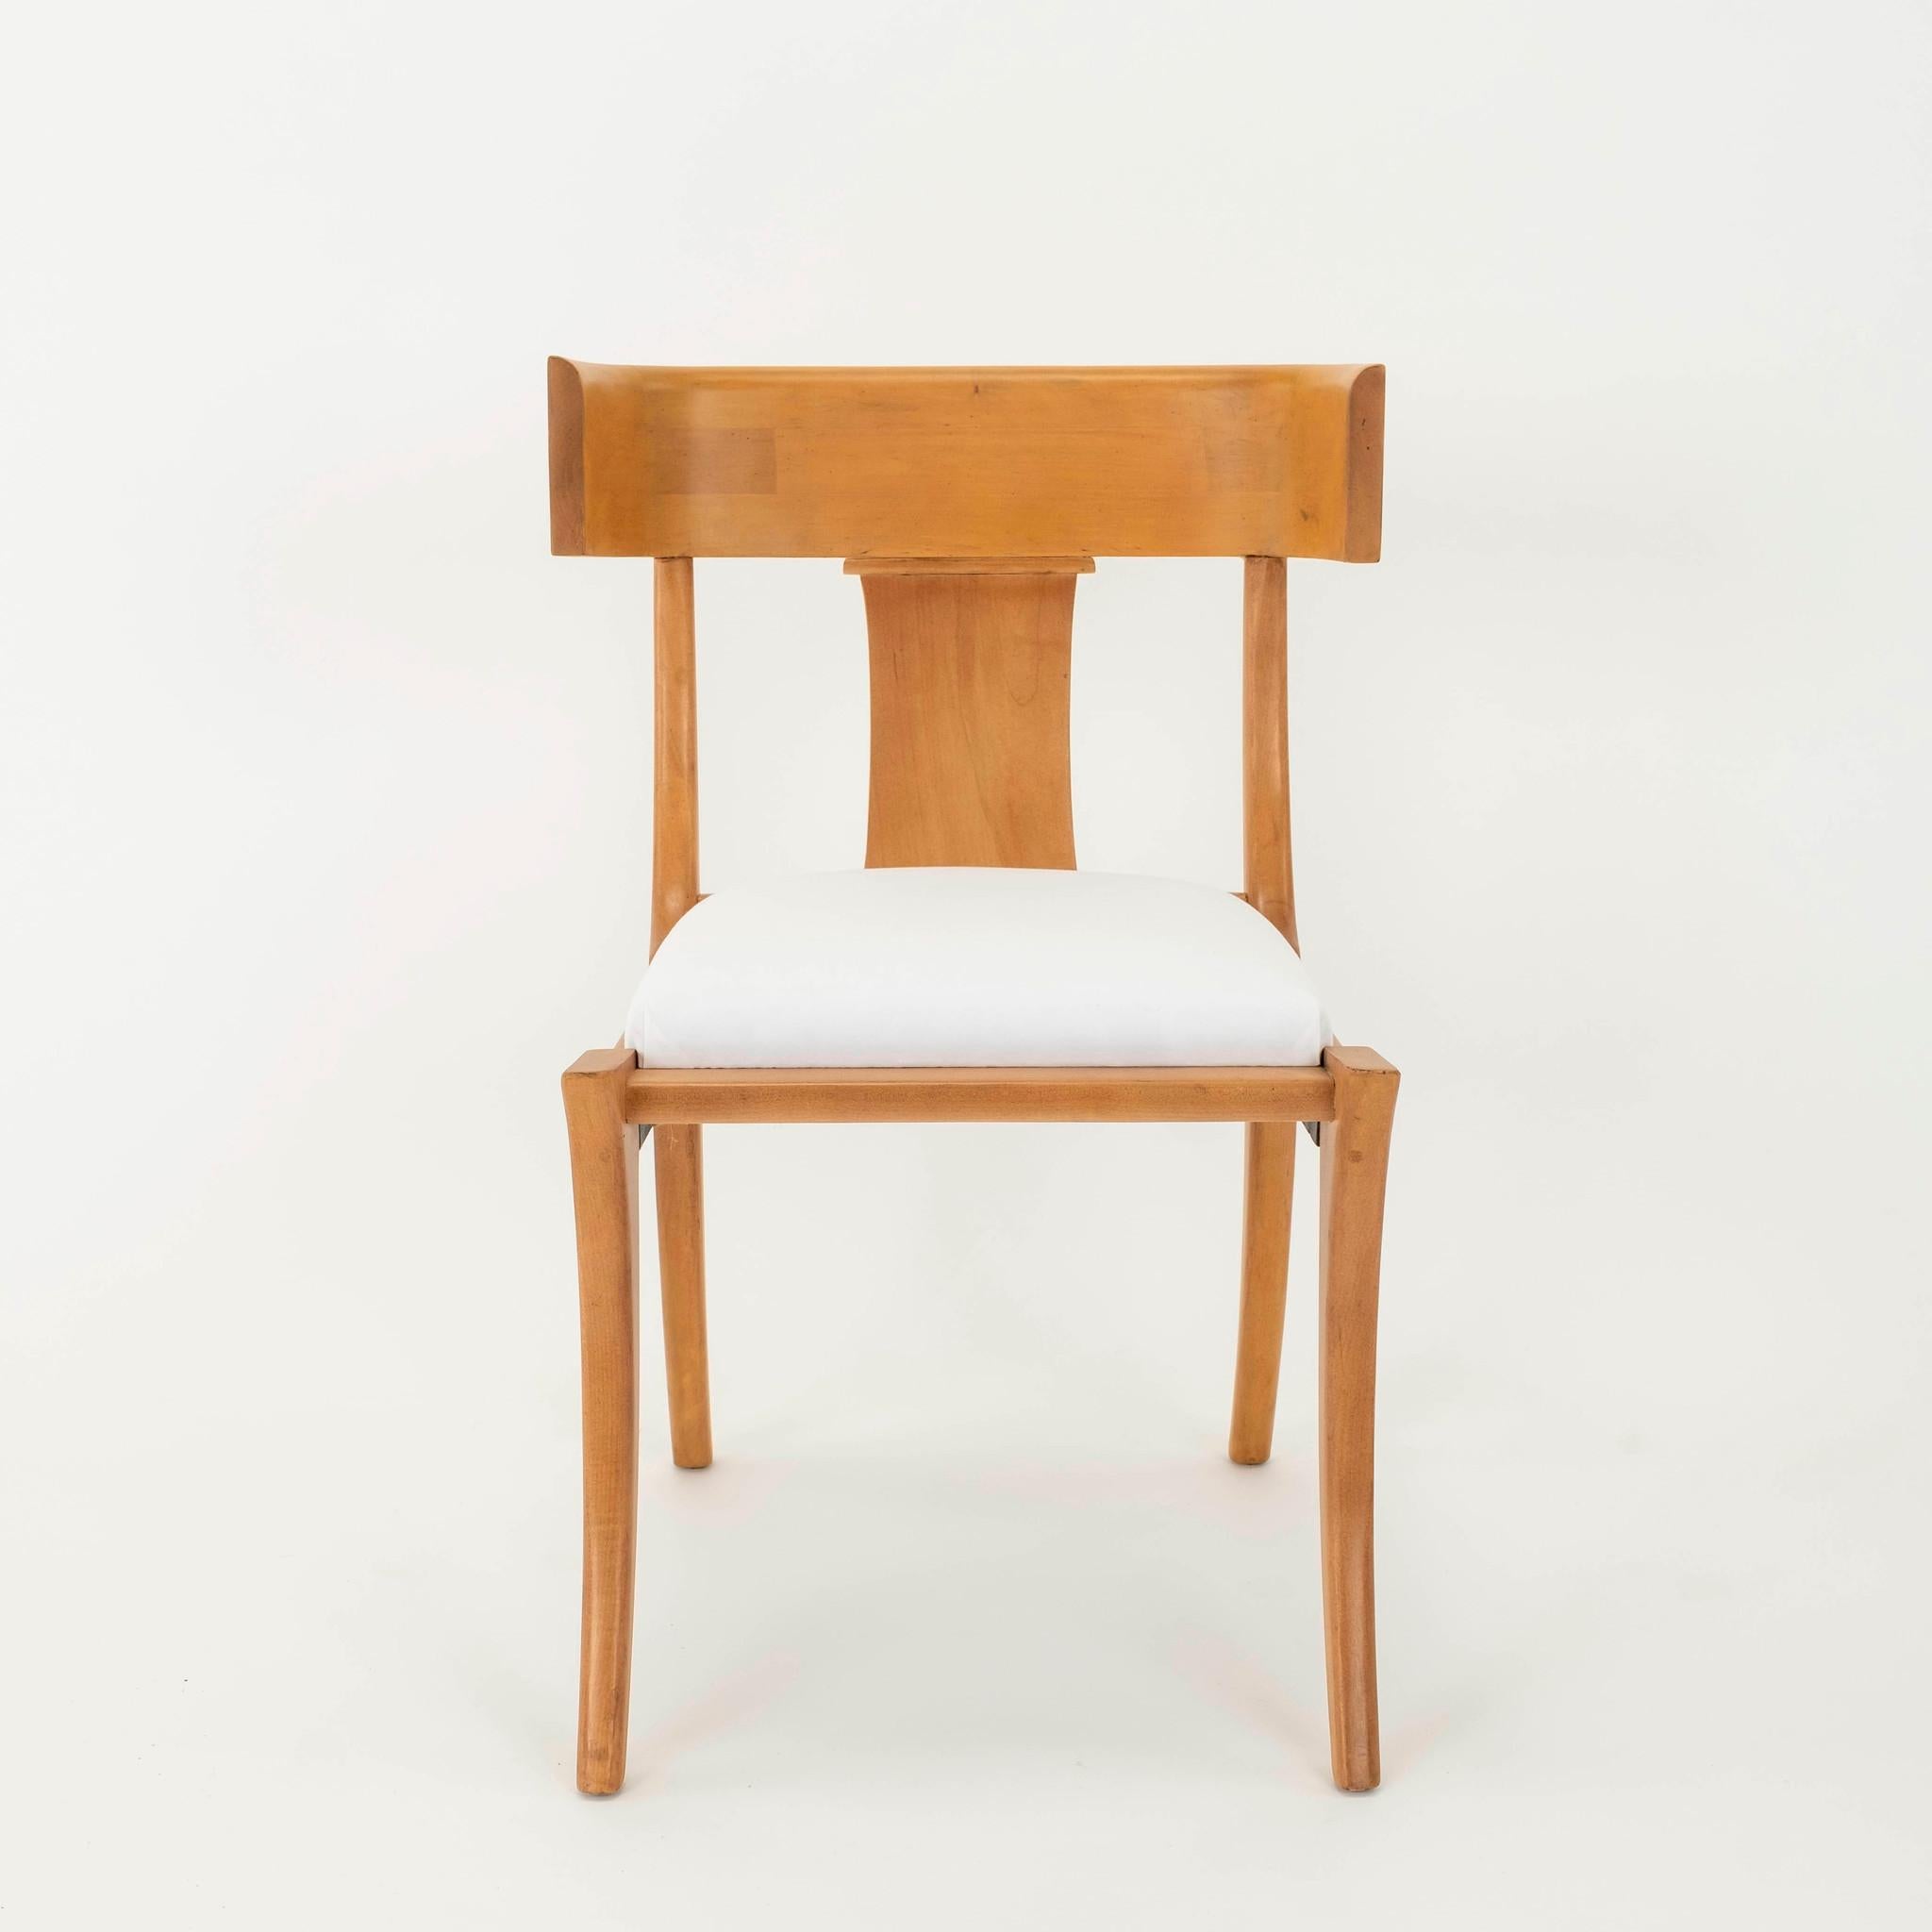 Blonde Klismos-Stühle im Vintage-Stil mit neu gepolsterten Sitzen. Schicken Sie uns Ihren Stoff, und wir können ihn ohne Aufpreis und in kürzester Zeit aufpolstern.